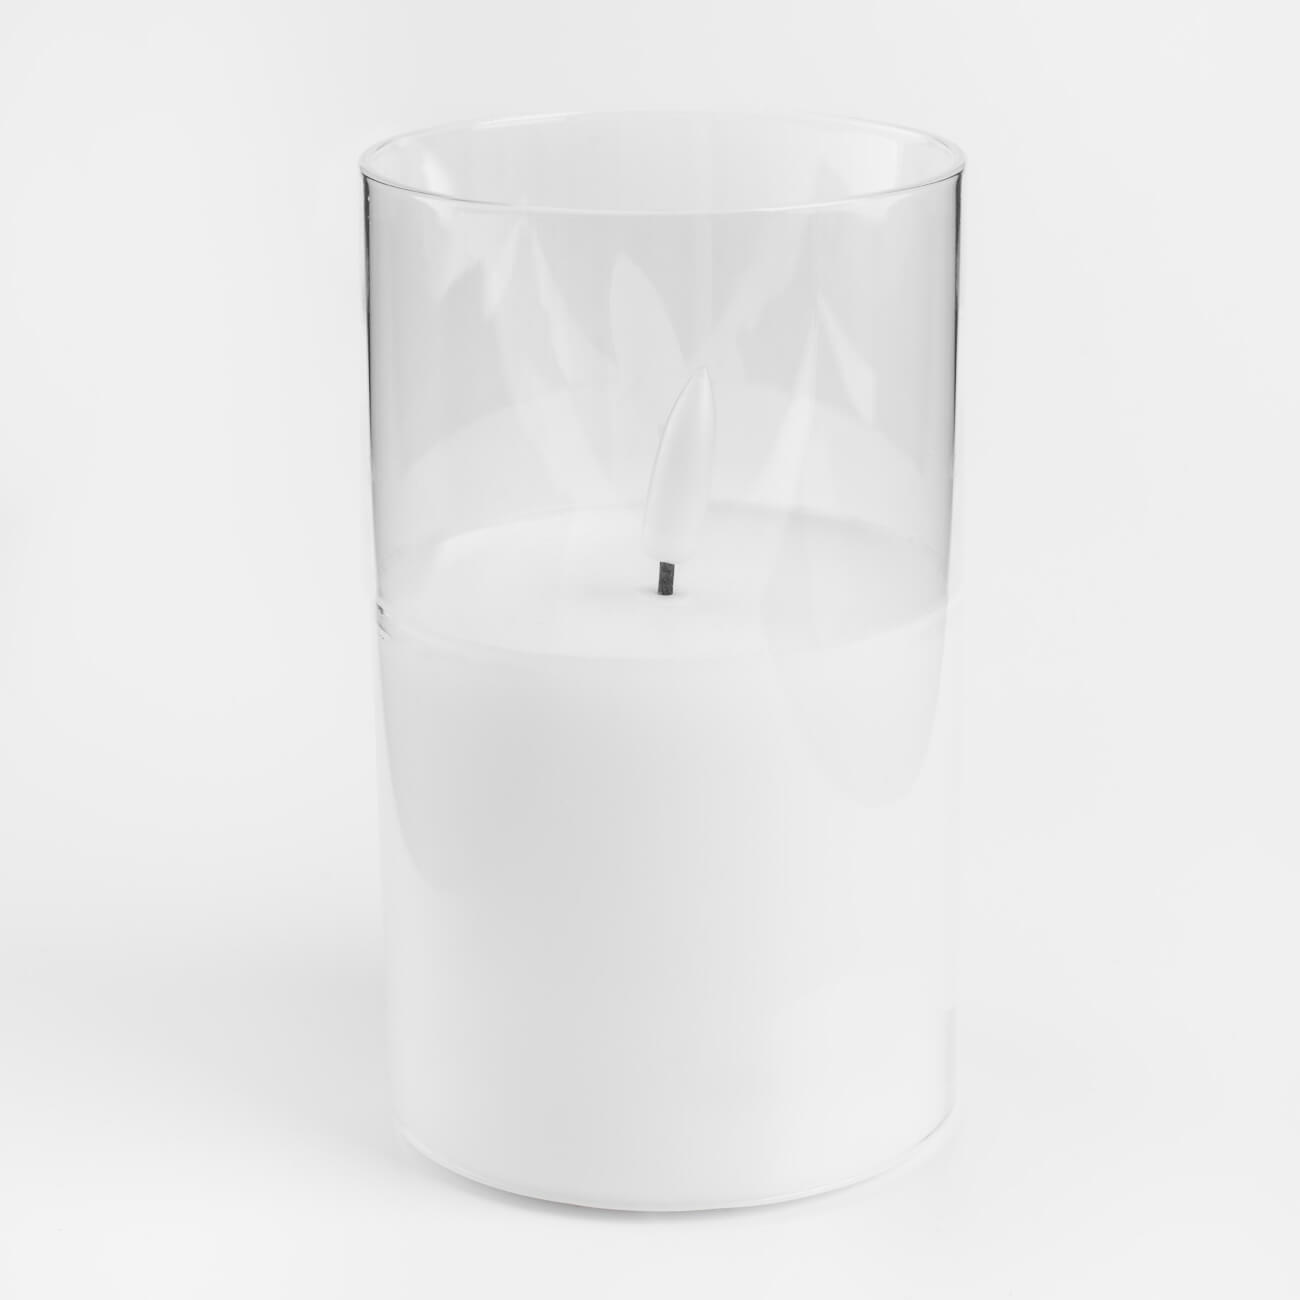 Свеча электрическая, 12 см, стекло/парафин, белая, Flameless